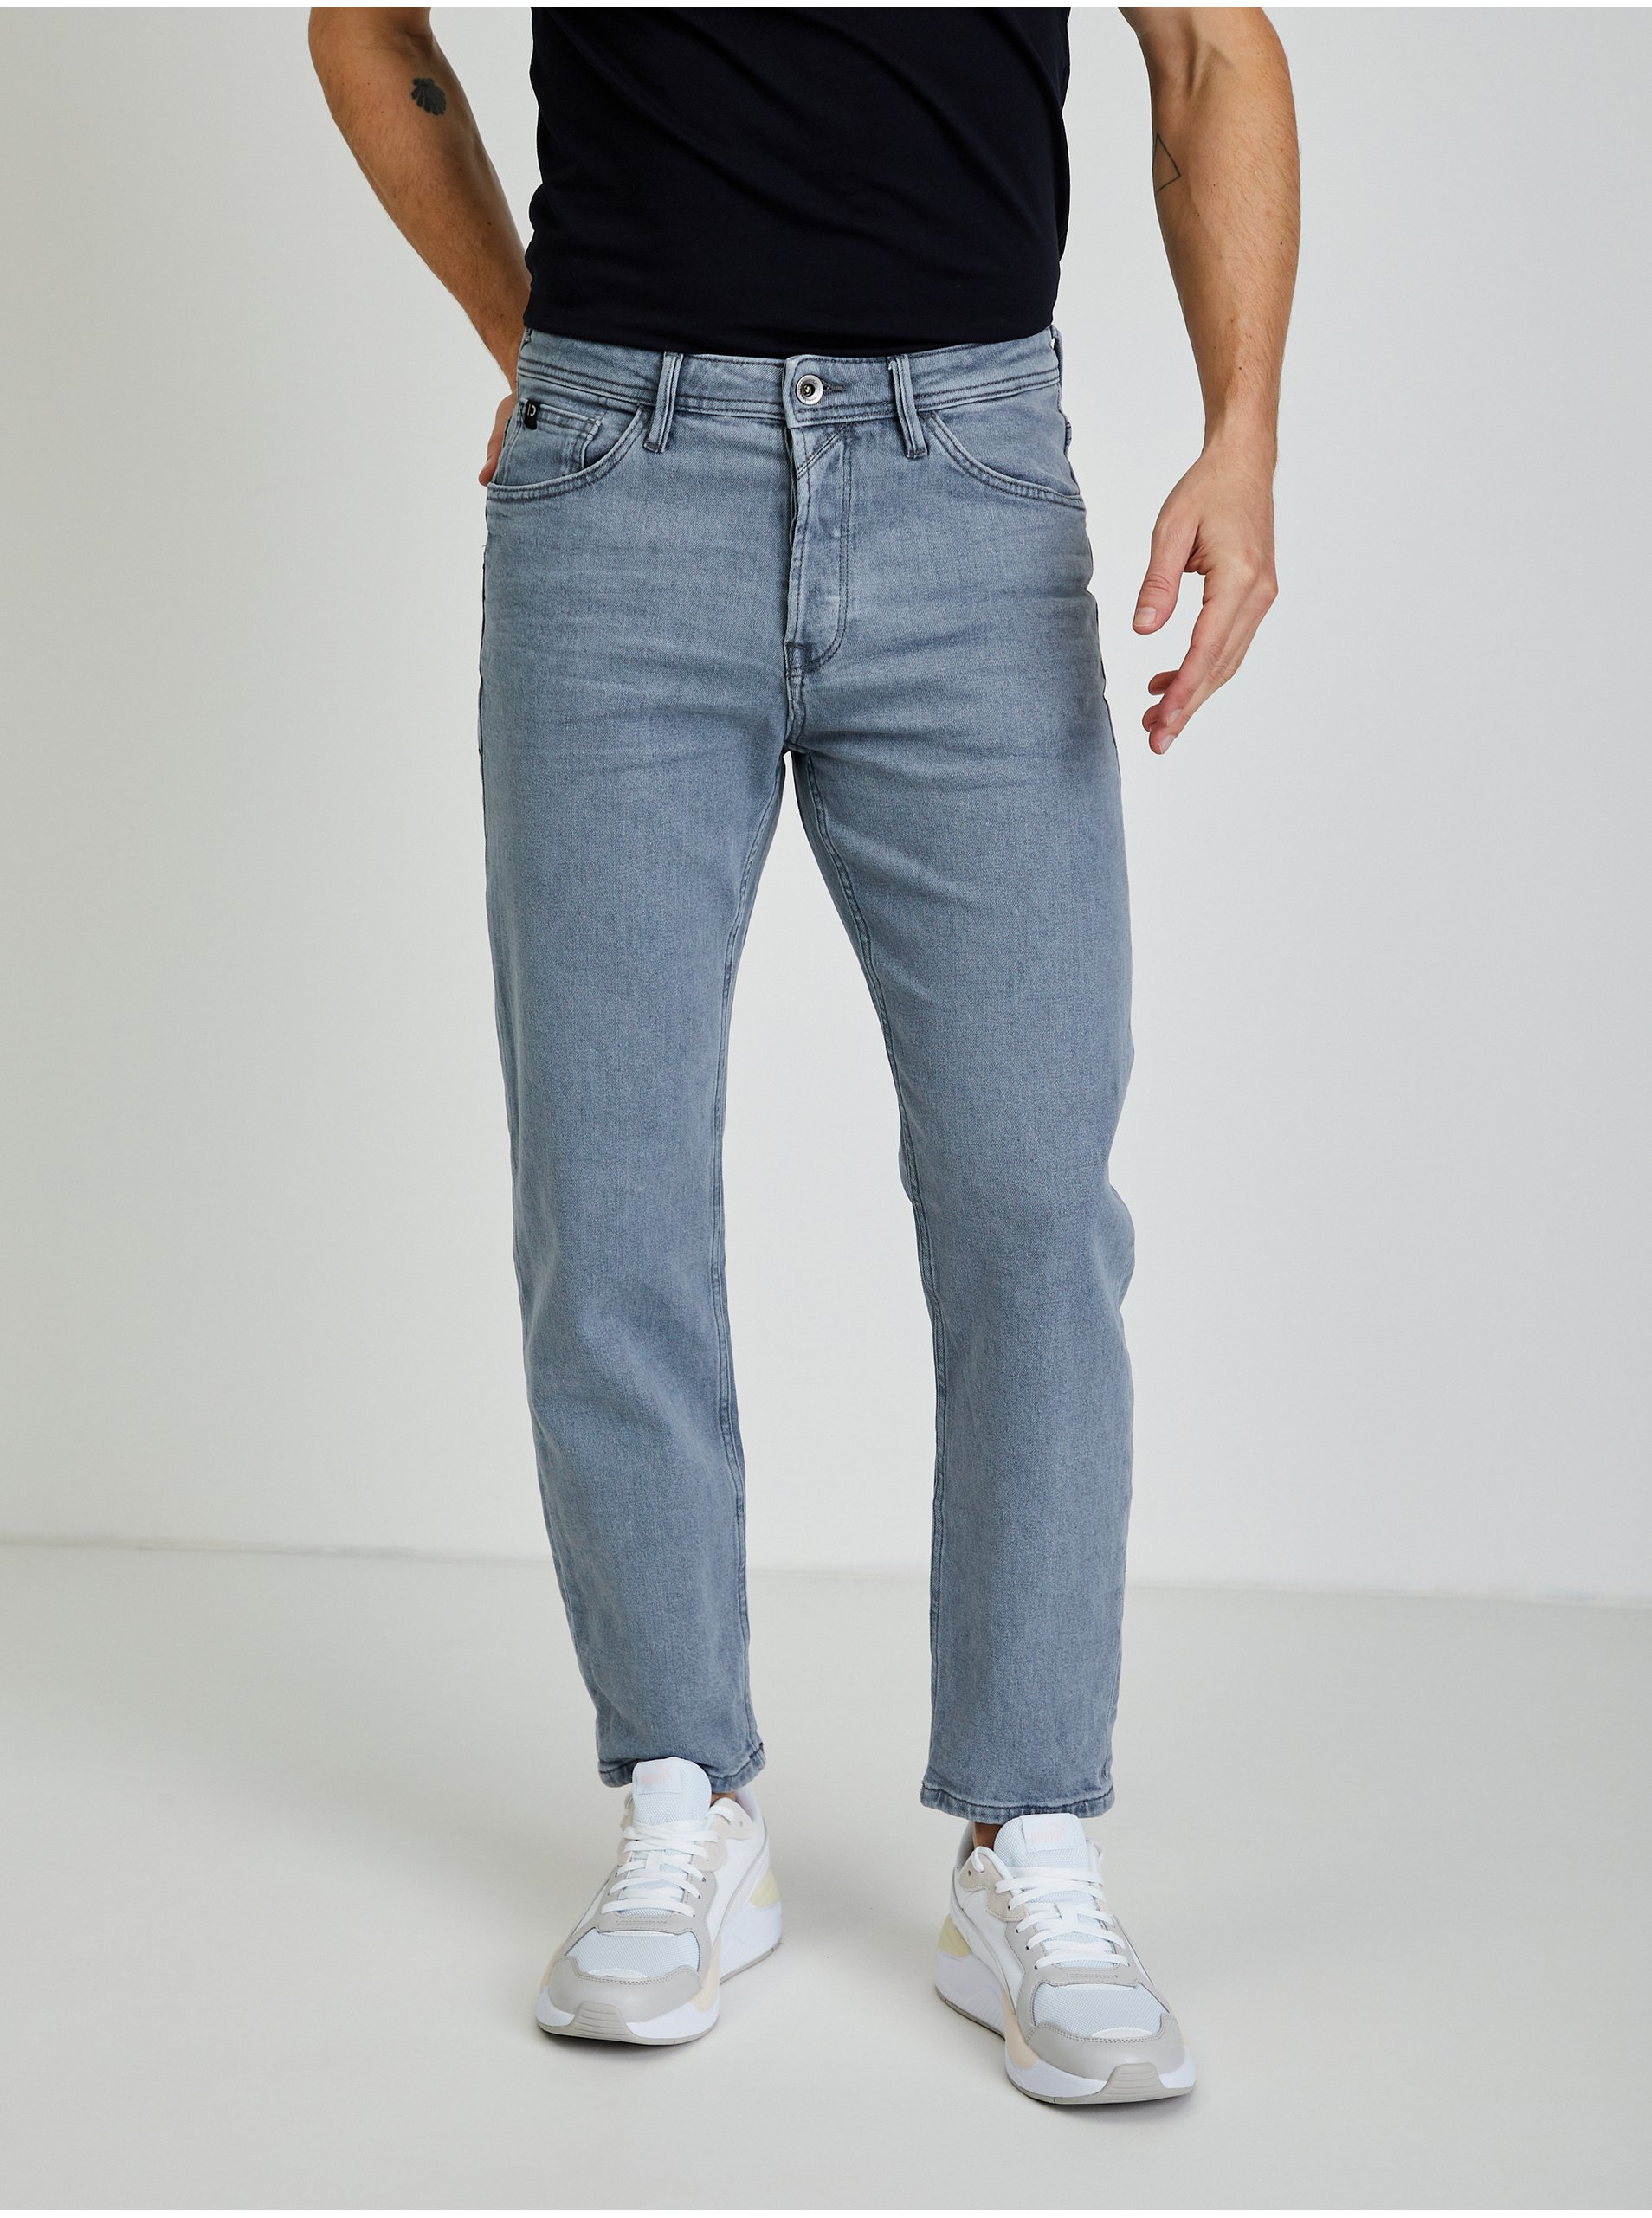 Light Grey Men's Straight Fit Jeans Tom Tailor Denim - Men's